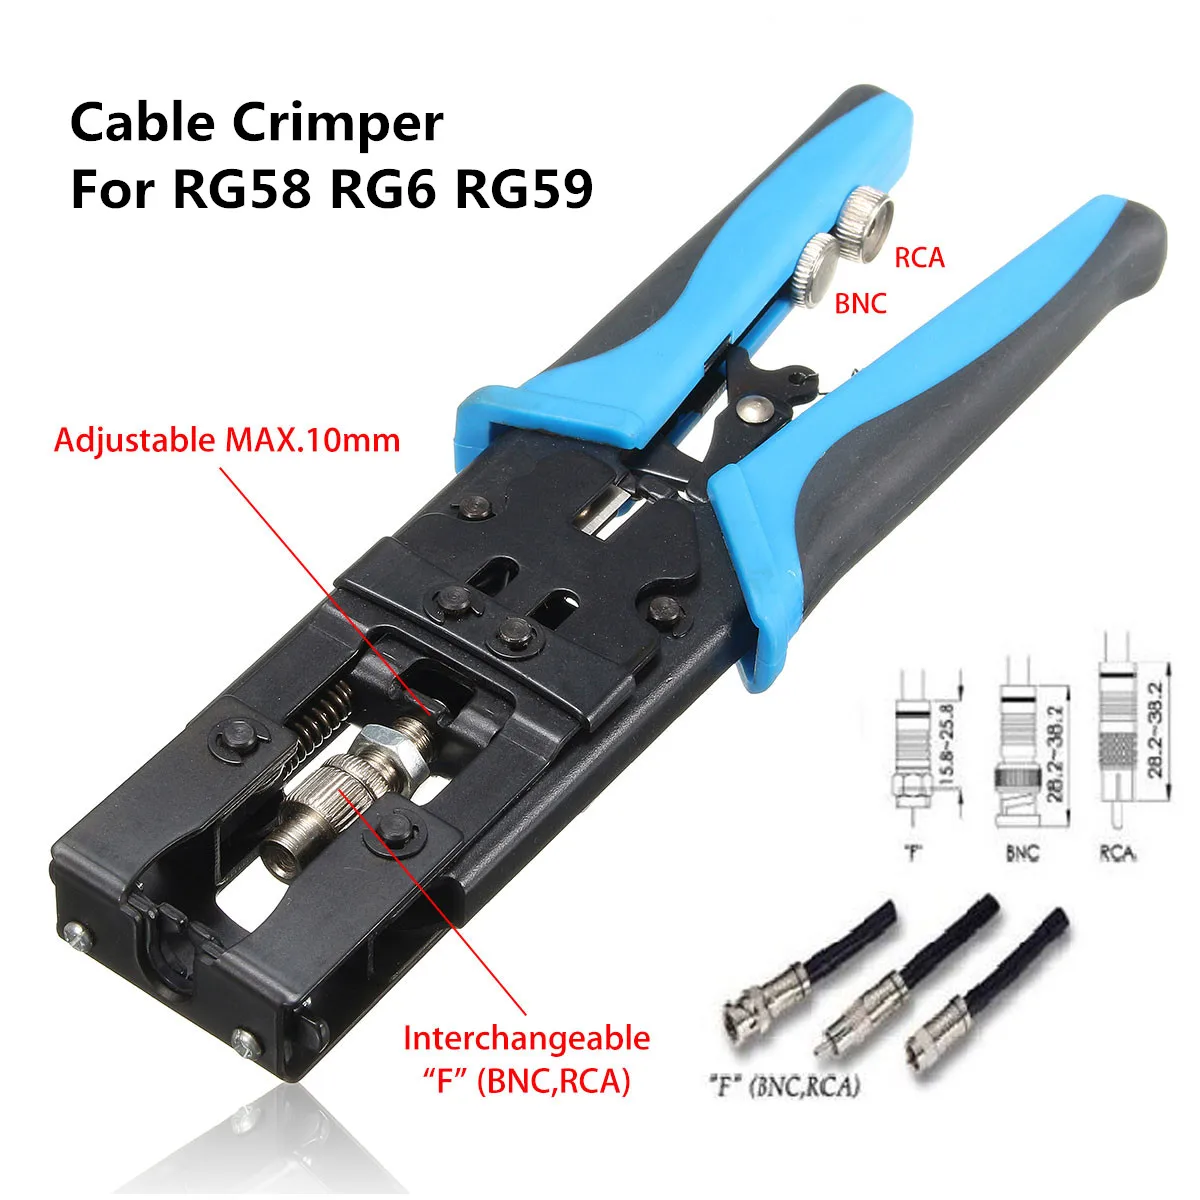 S SKYEE инструмент для обжима кабеля RG59/58/RG6 коаксиальный обжимные соединители BNC/RCA/F Кабельные плоскогубцы резак для проводов сетевые инструменты